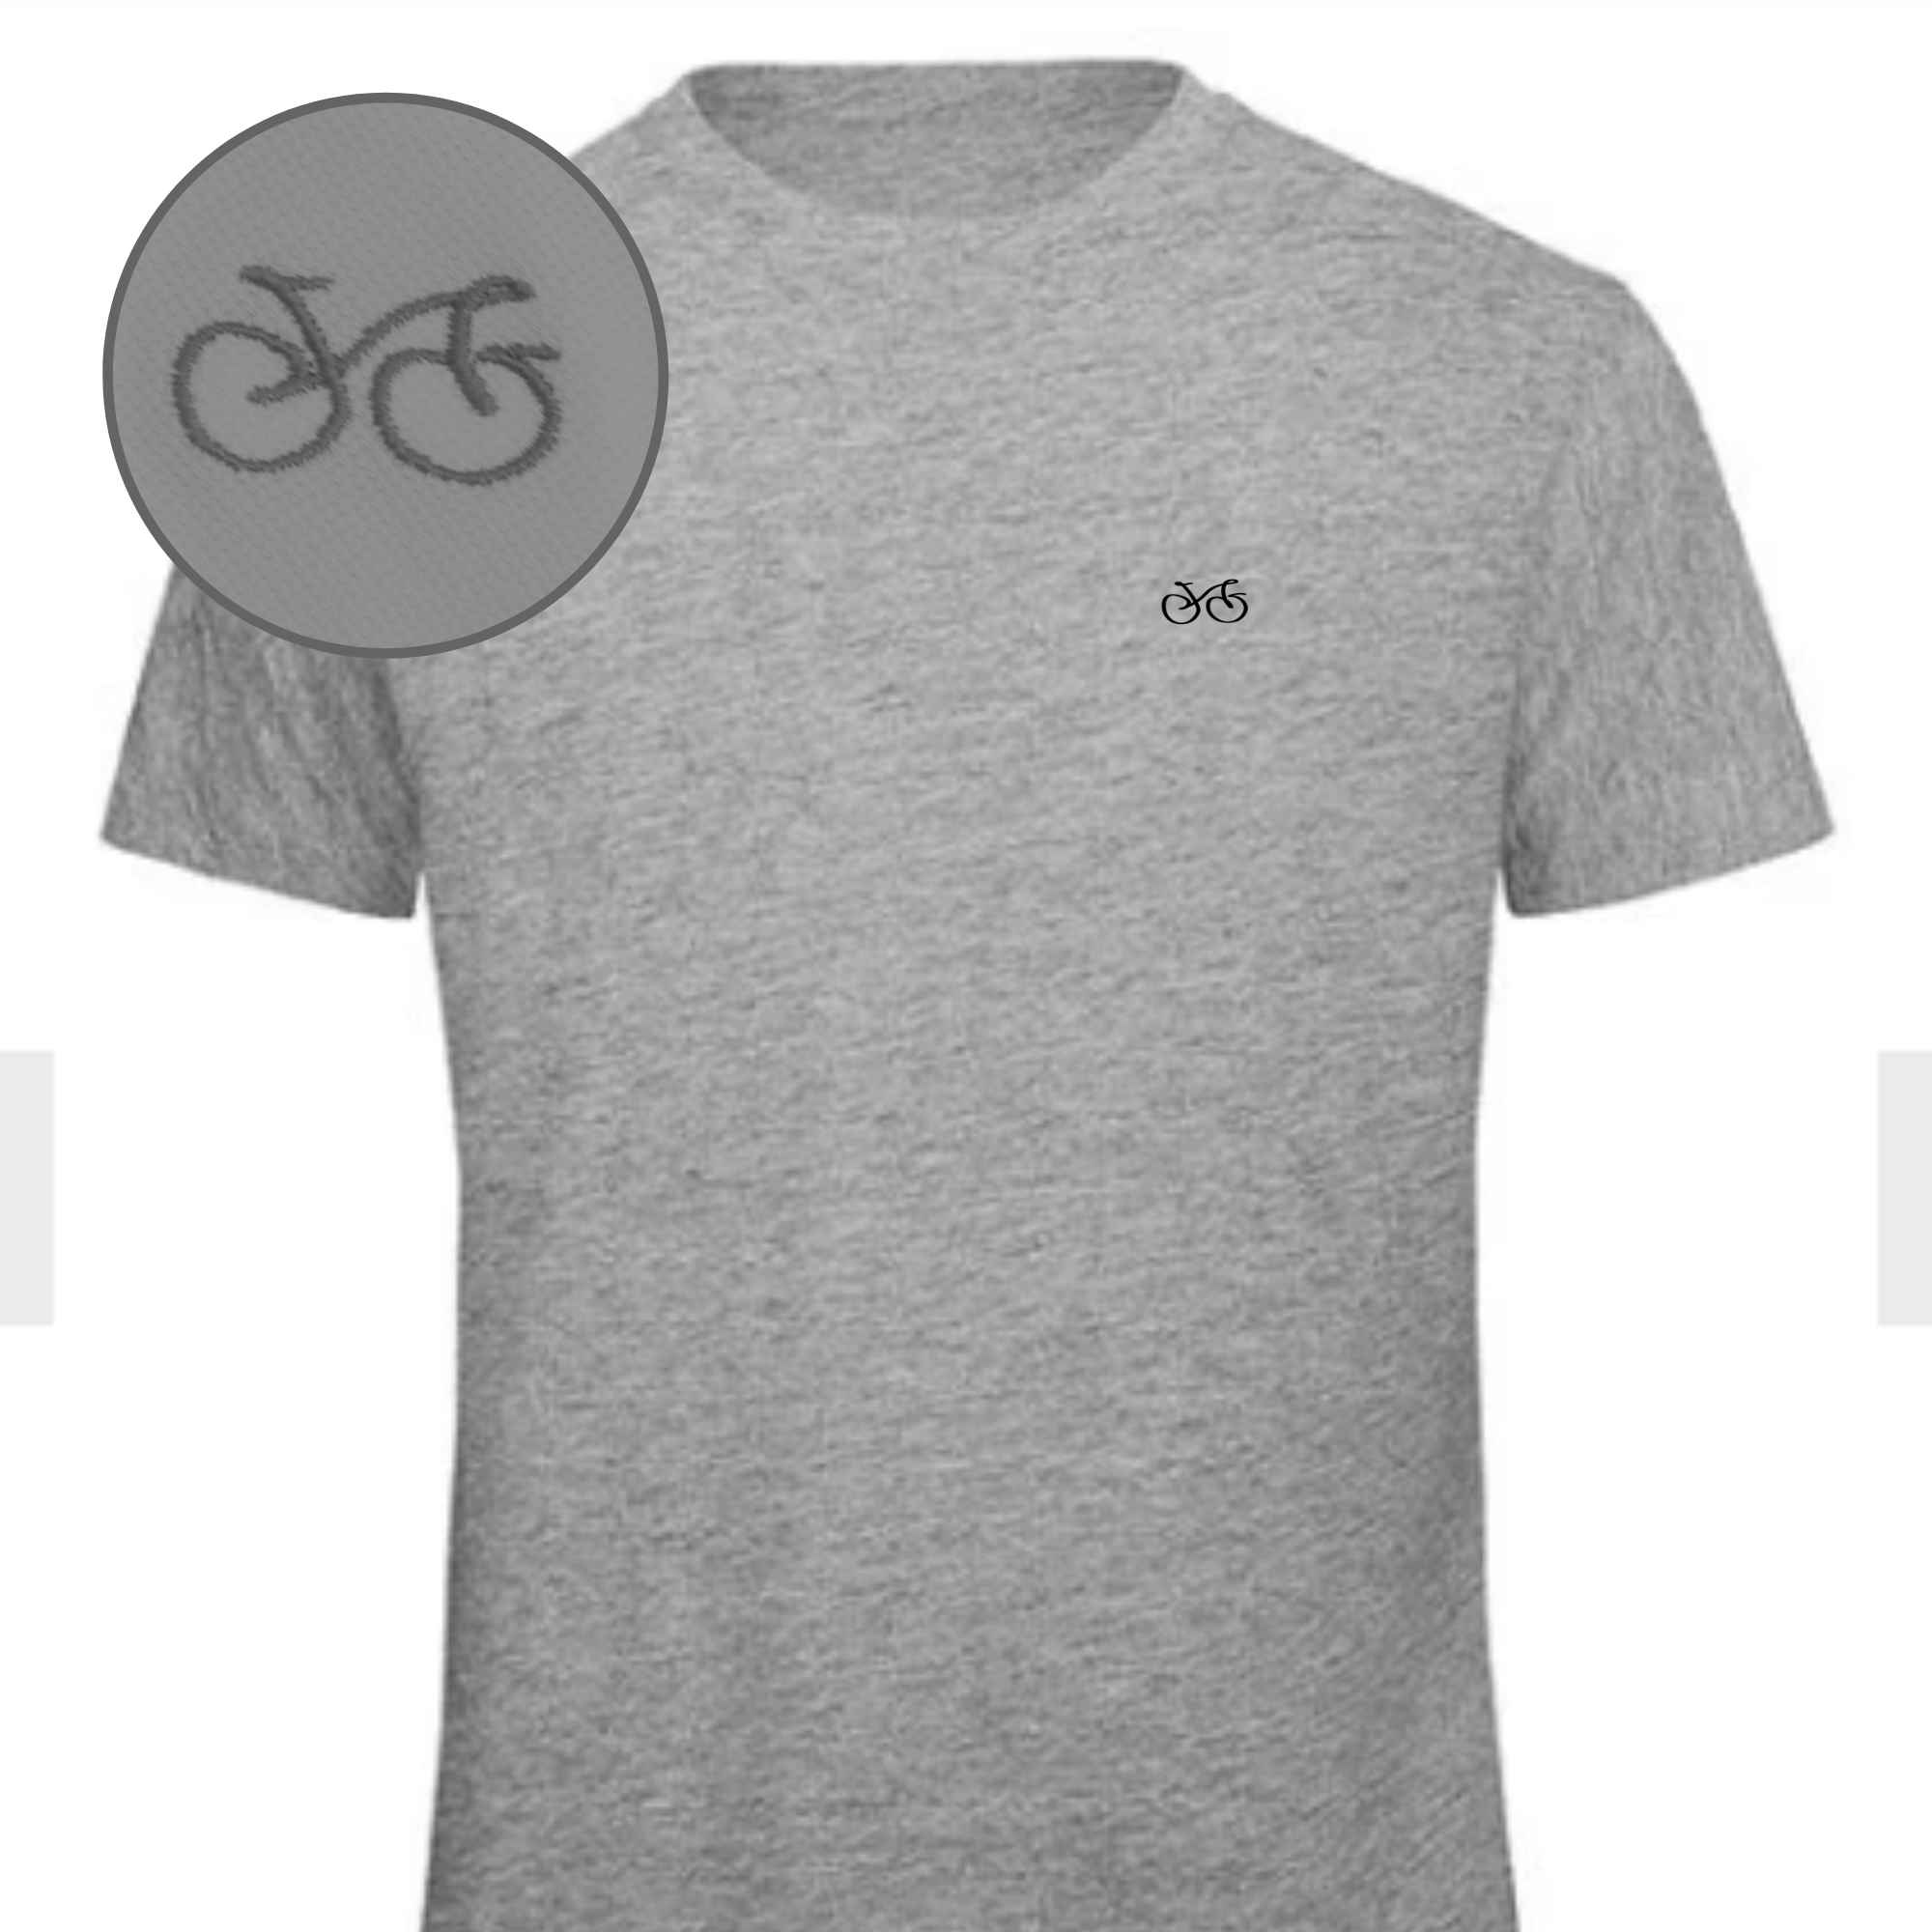 Herren T-Shirt mit einem Bike auf der Brust für Abenteuerlustige in Farbe Grau